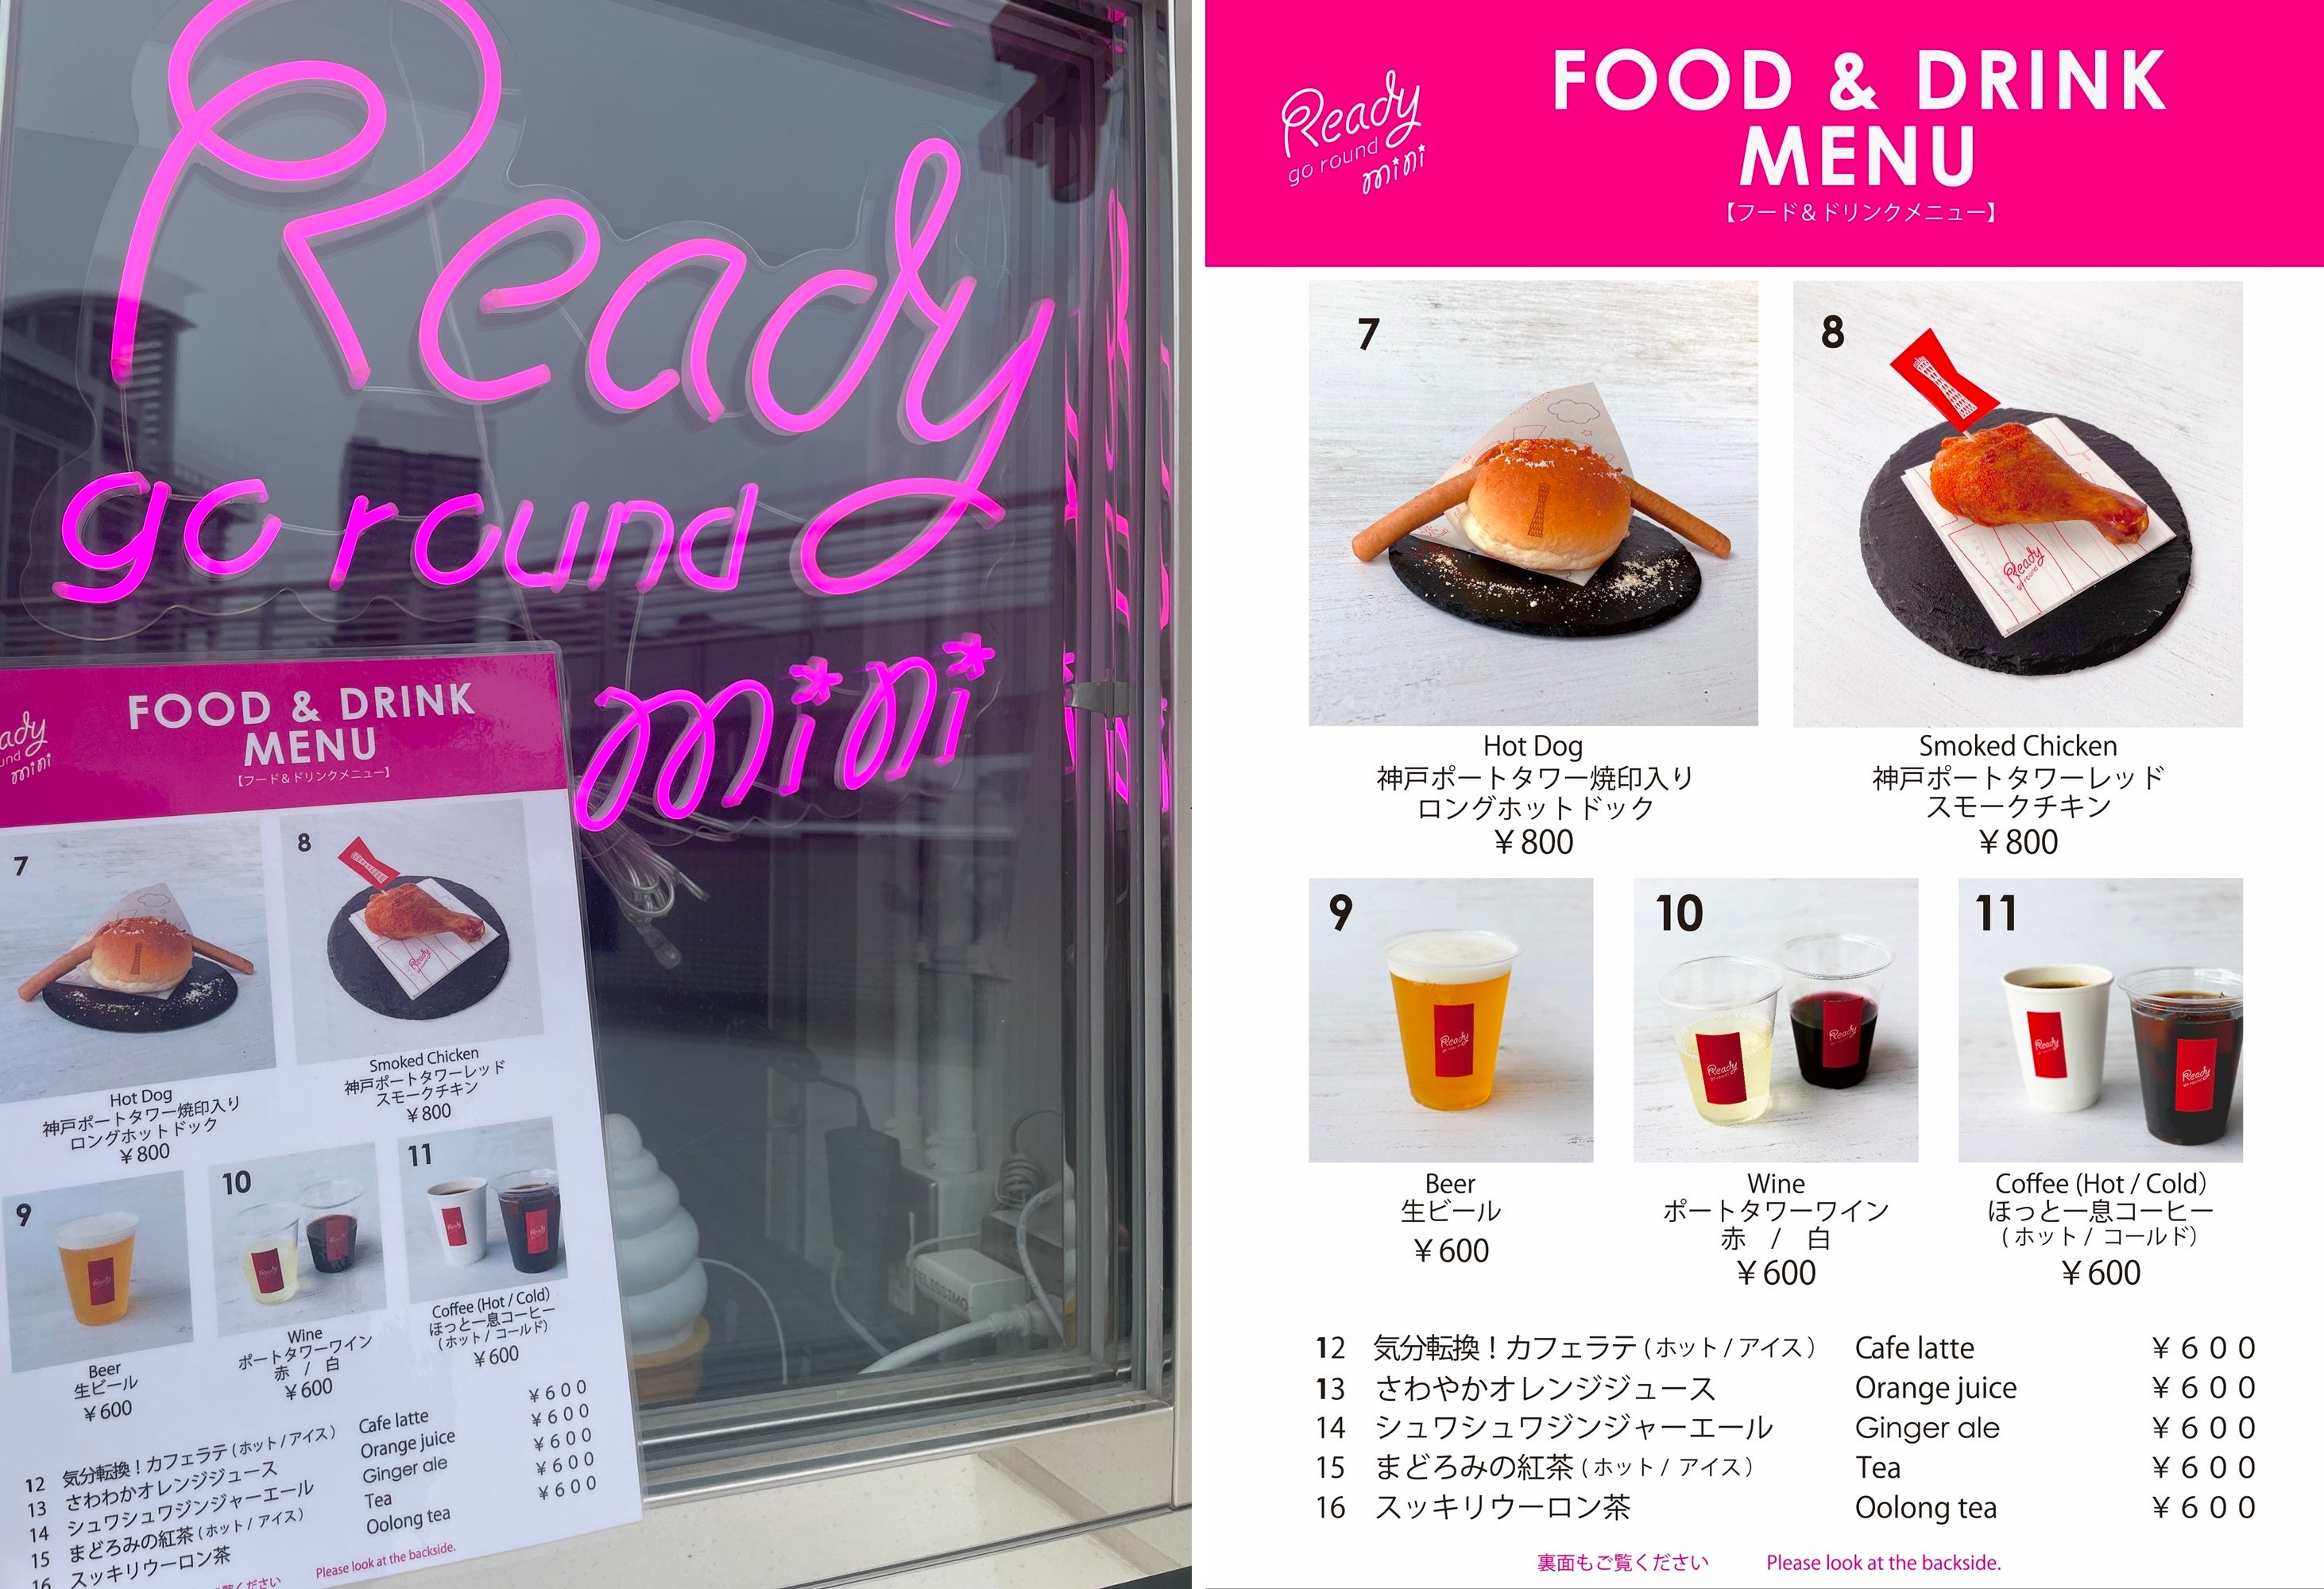 7月3日「ソフトクリームの日」限定、「神戸ポートタワー入場チケット」購入で『赤い「ソフトクリーム」』の割...